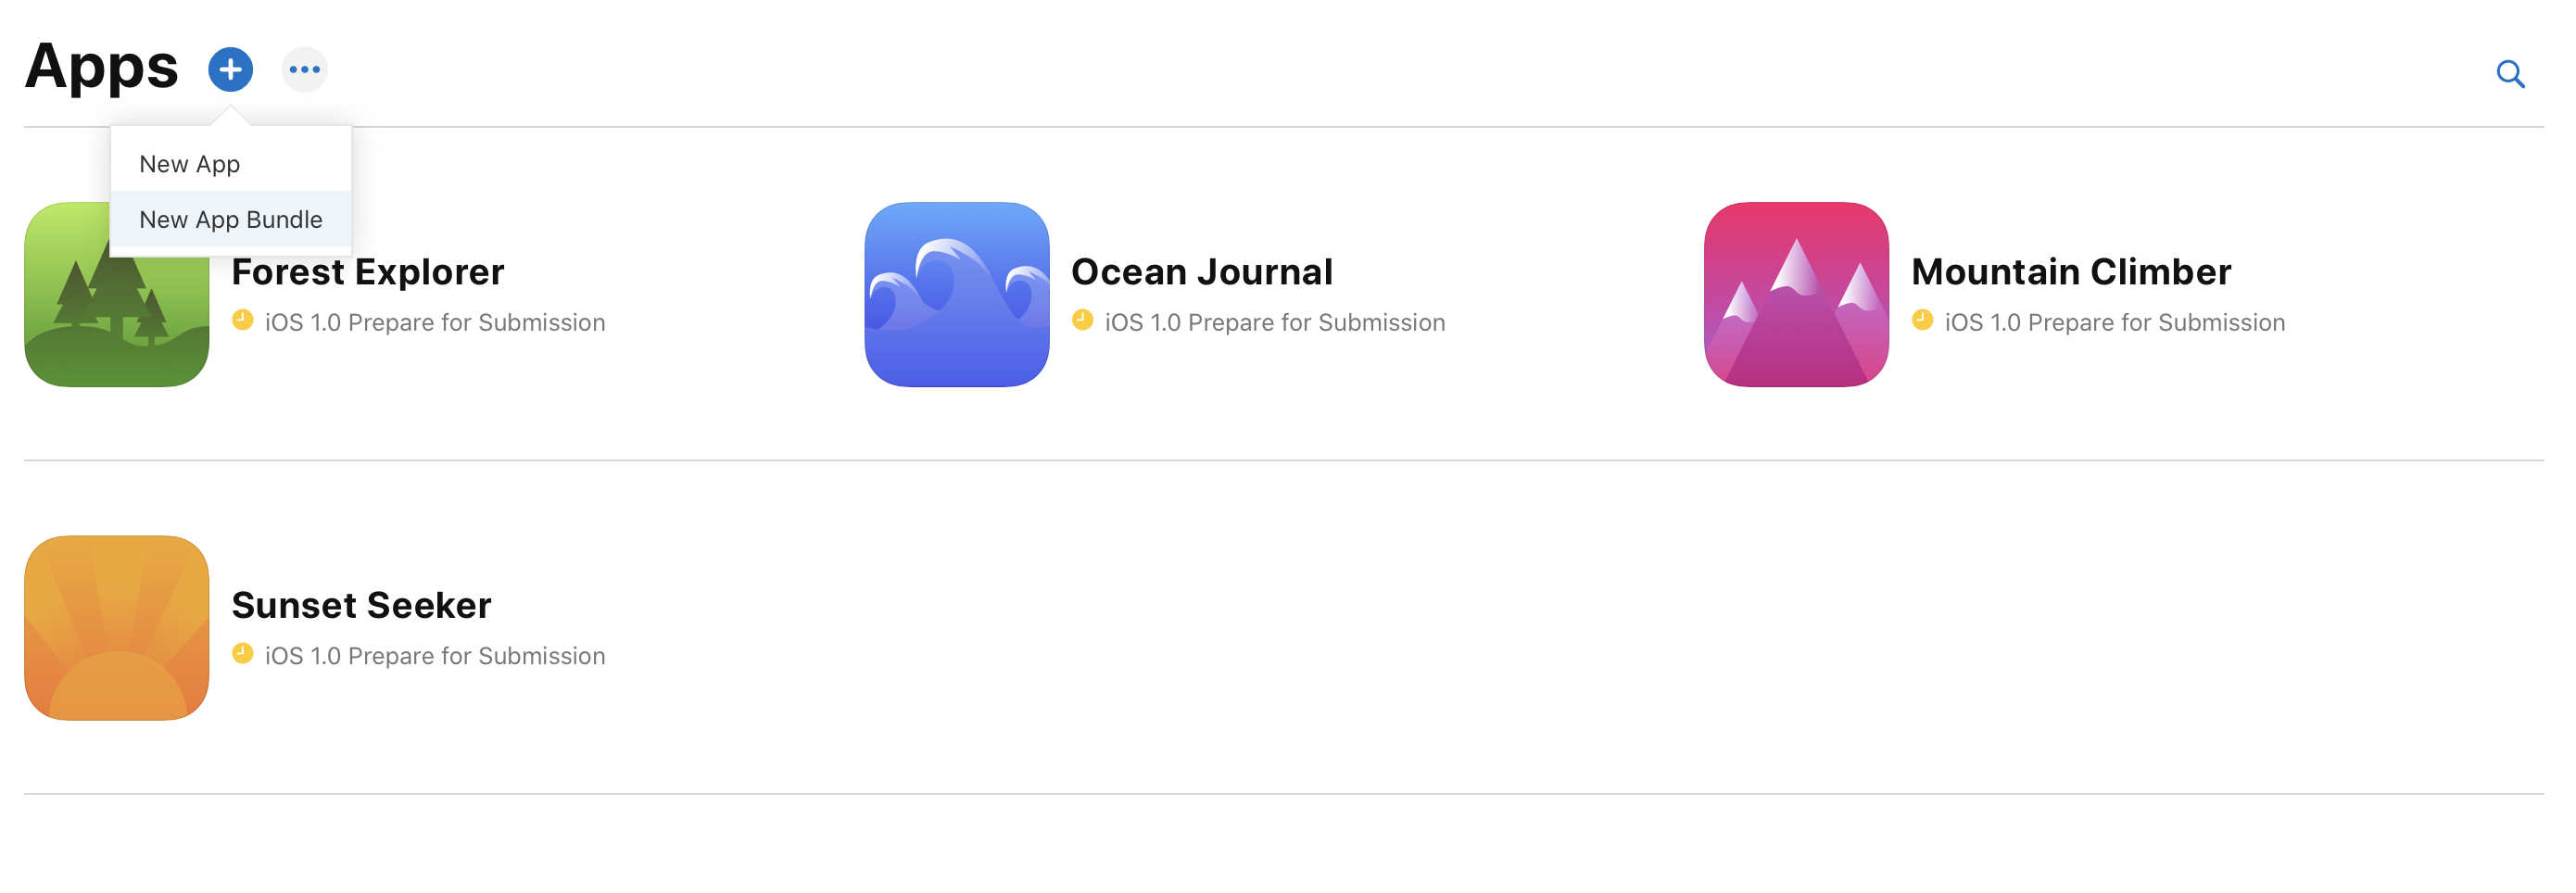 「アプリ」ページ左上にある追加ボタンがクリックされており、「新規アプリ」と「新規 App Bundle」のメニューが表示されています。